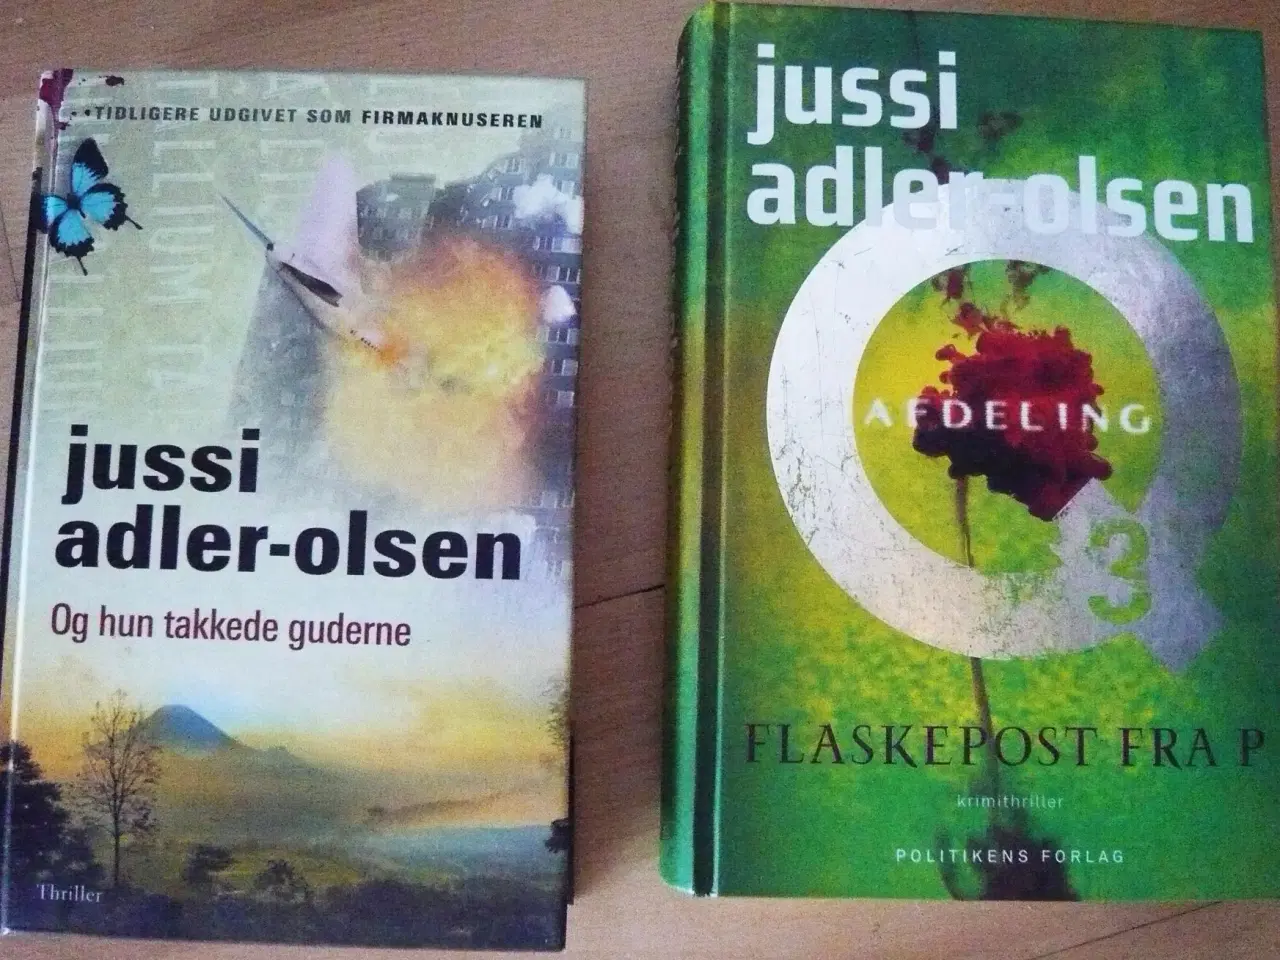 Billede 1 - Bøger af Jussi Adler-Olsens